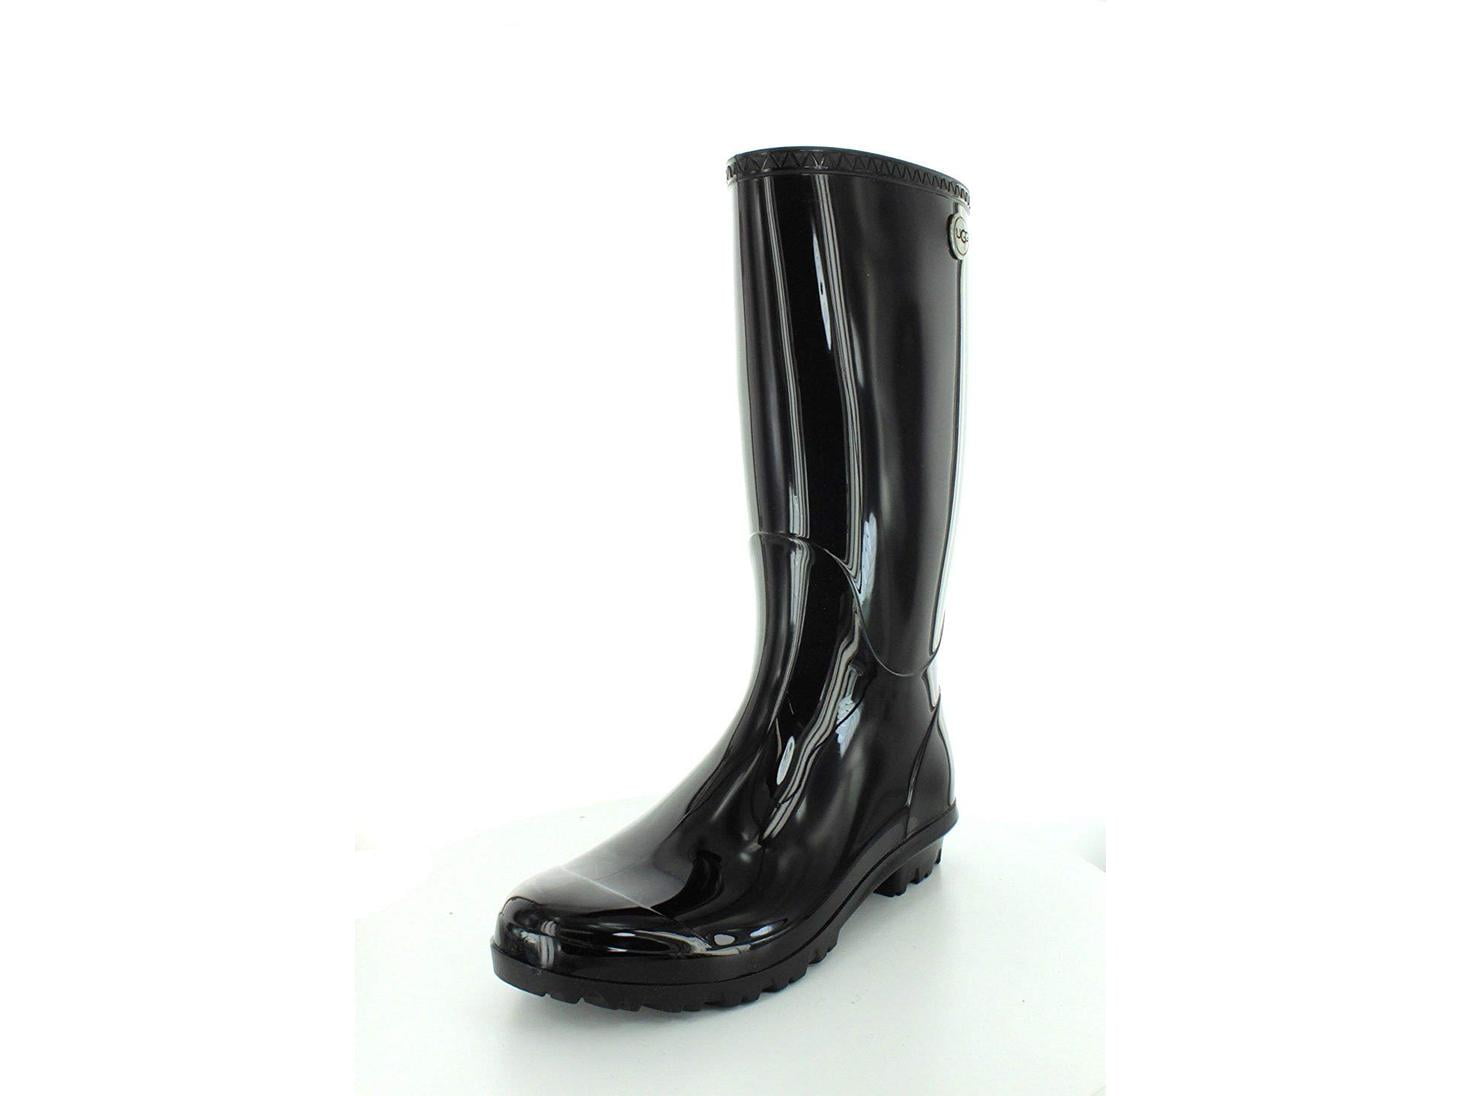 ugg shaye rain boots canada